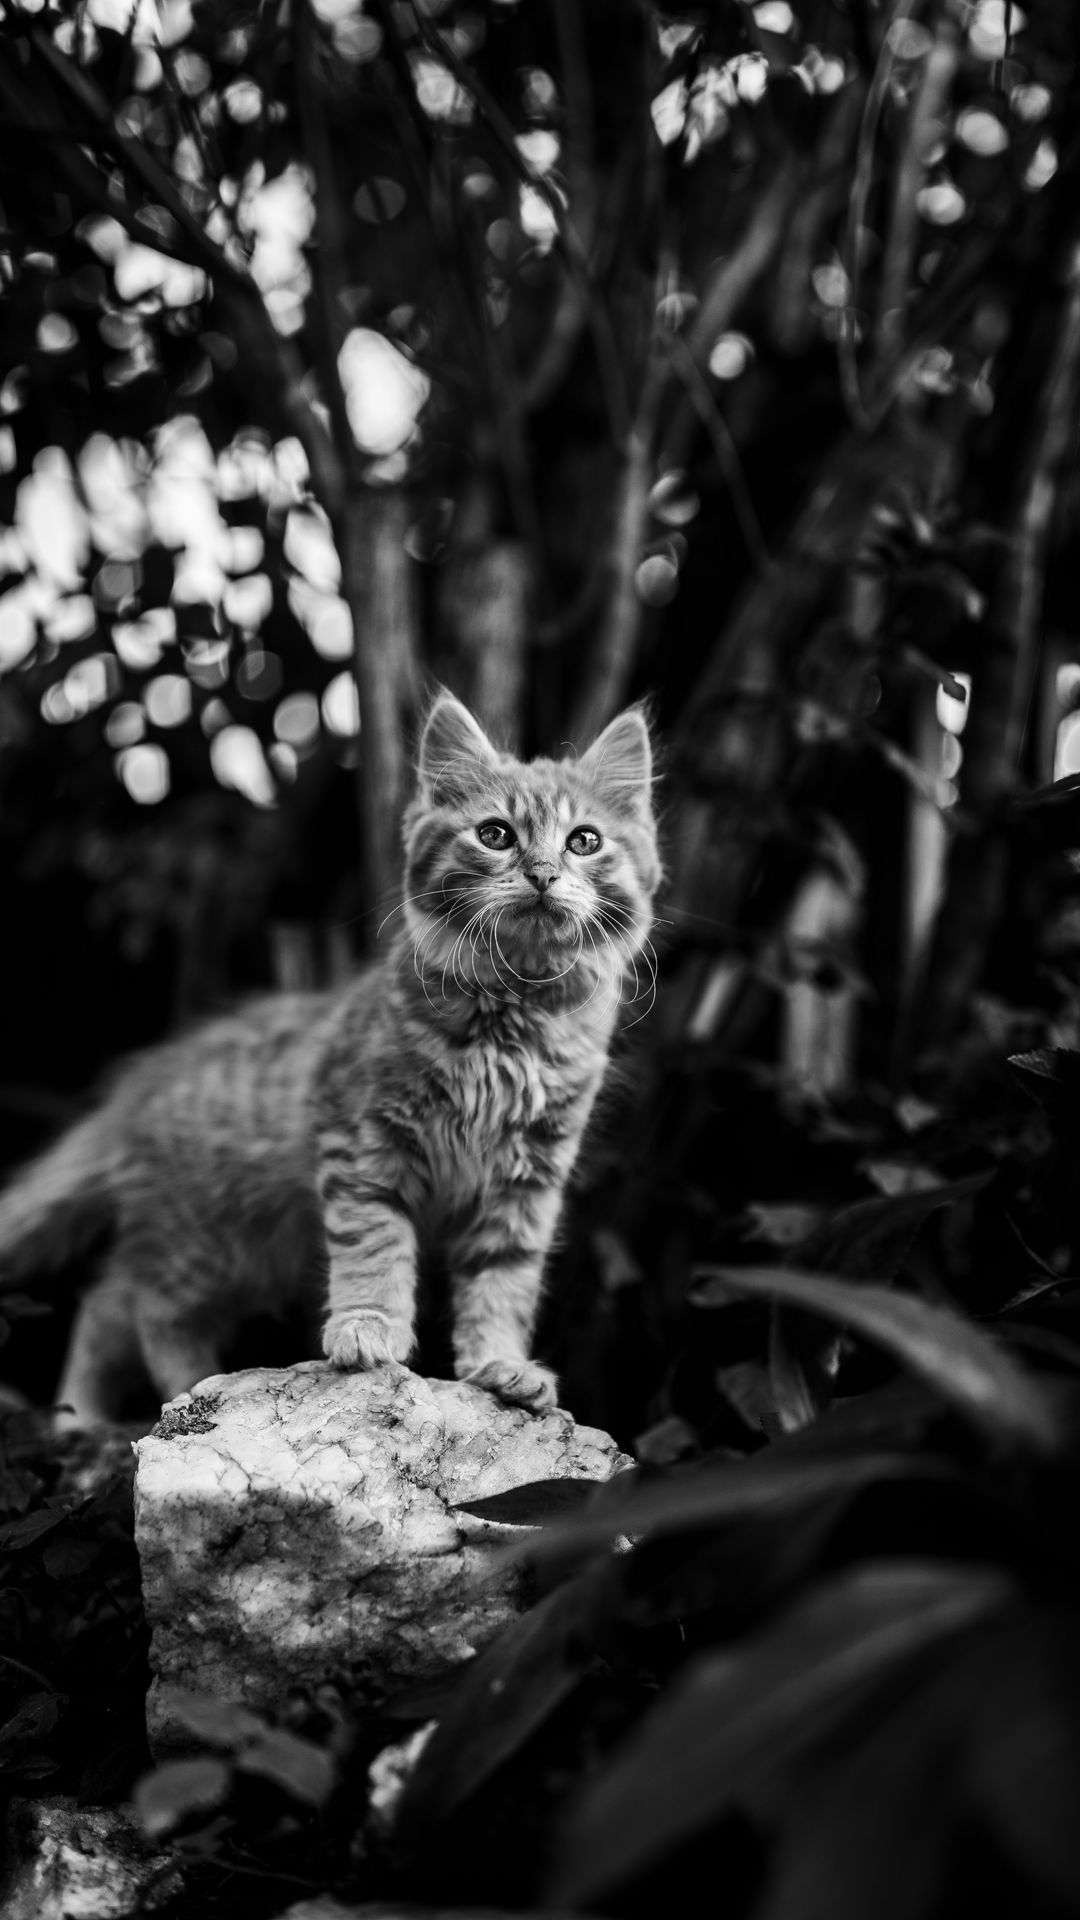 Kitten: Hình ảnh chú mèo con tuyệt đẹp giúp bạn tạo nên những ký ức đáng nhớ. Hãy cho bản thân mình thư giãn và nhìn thấy những điều đáng yêu nhất của thế giới động vật.